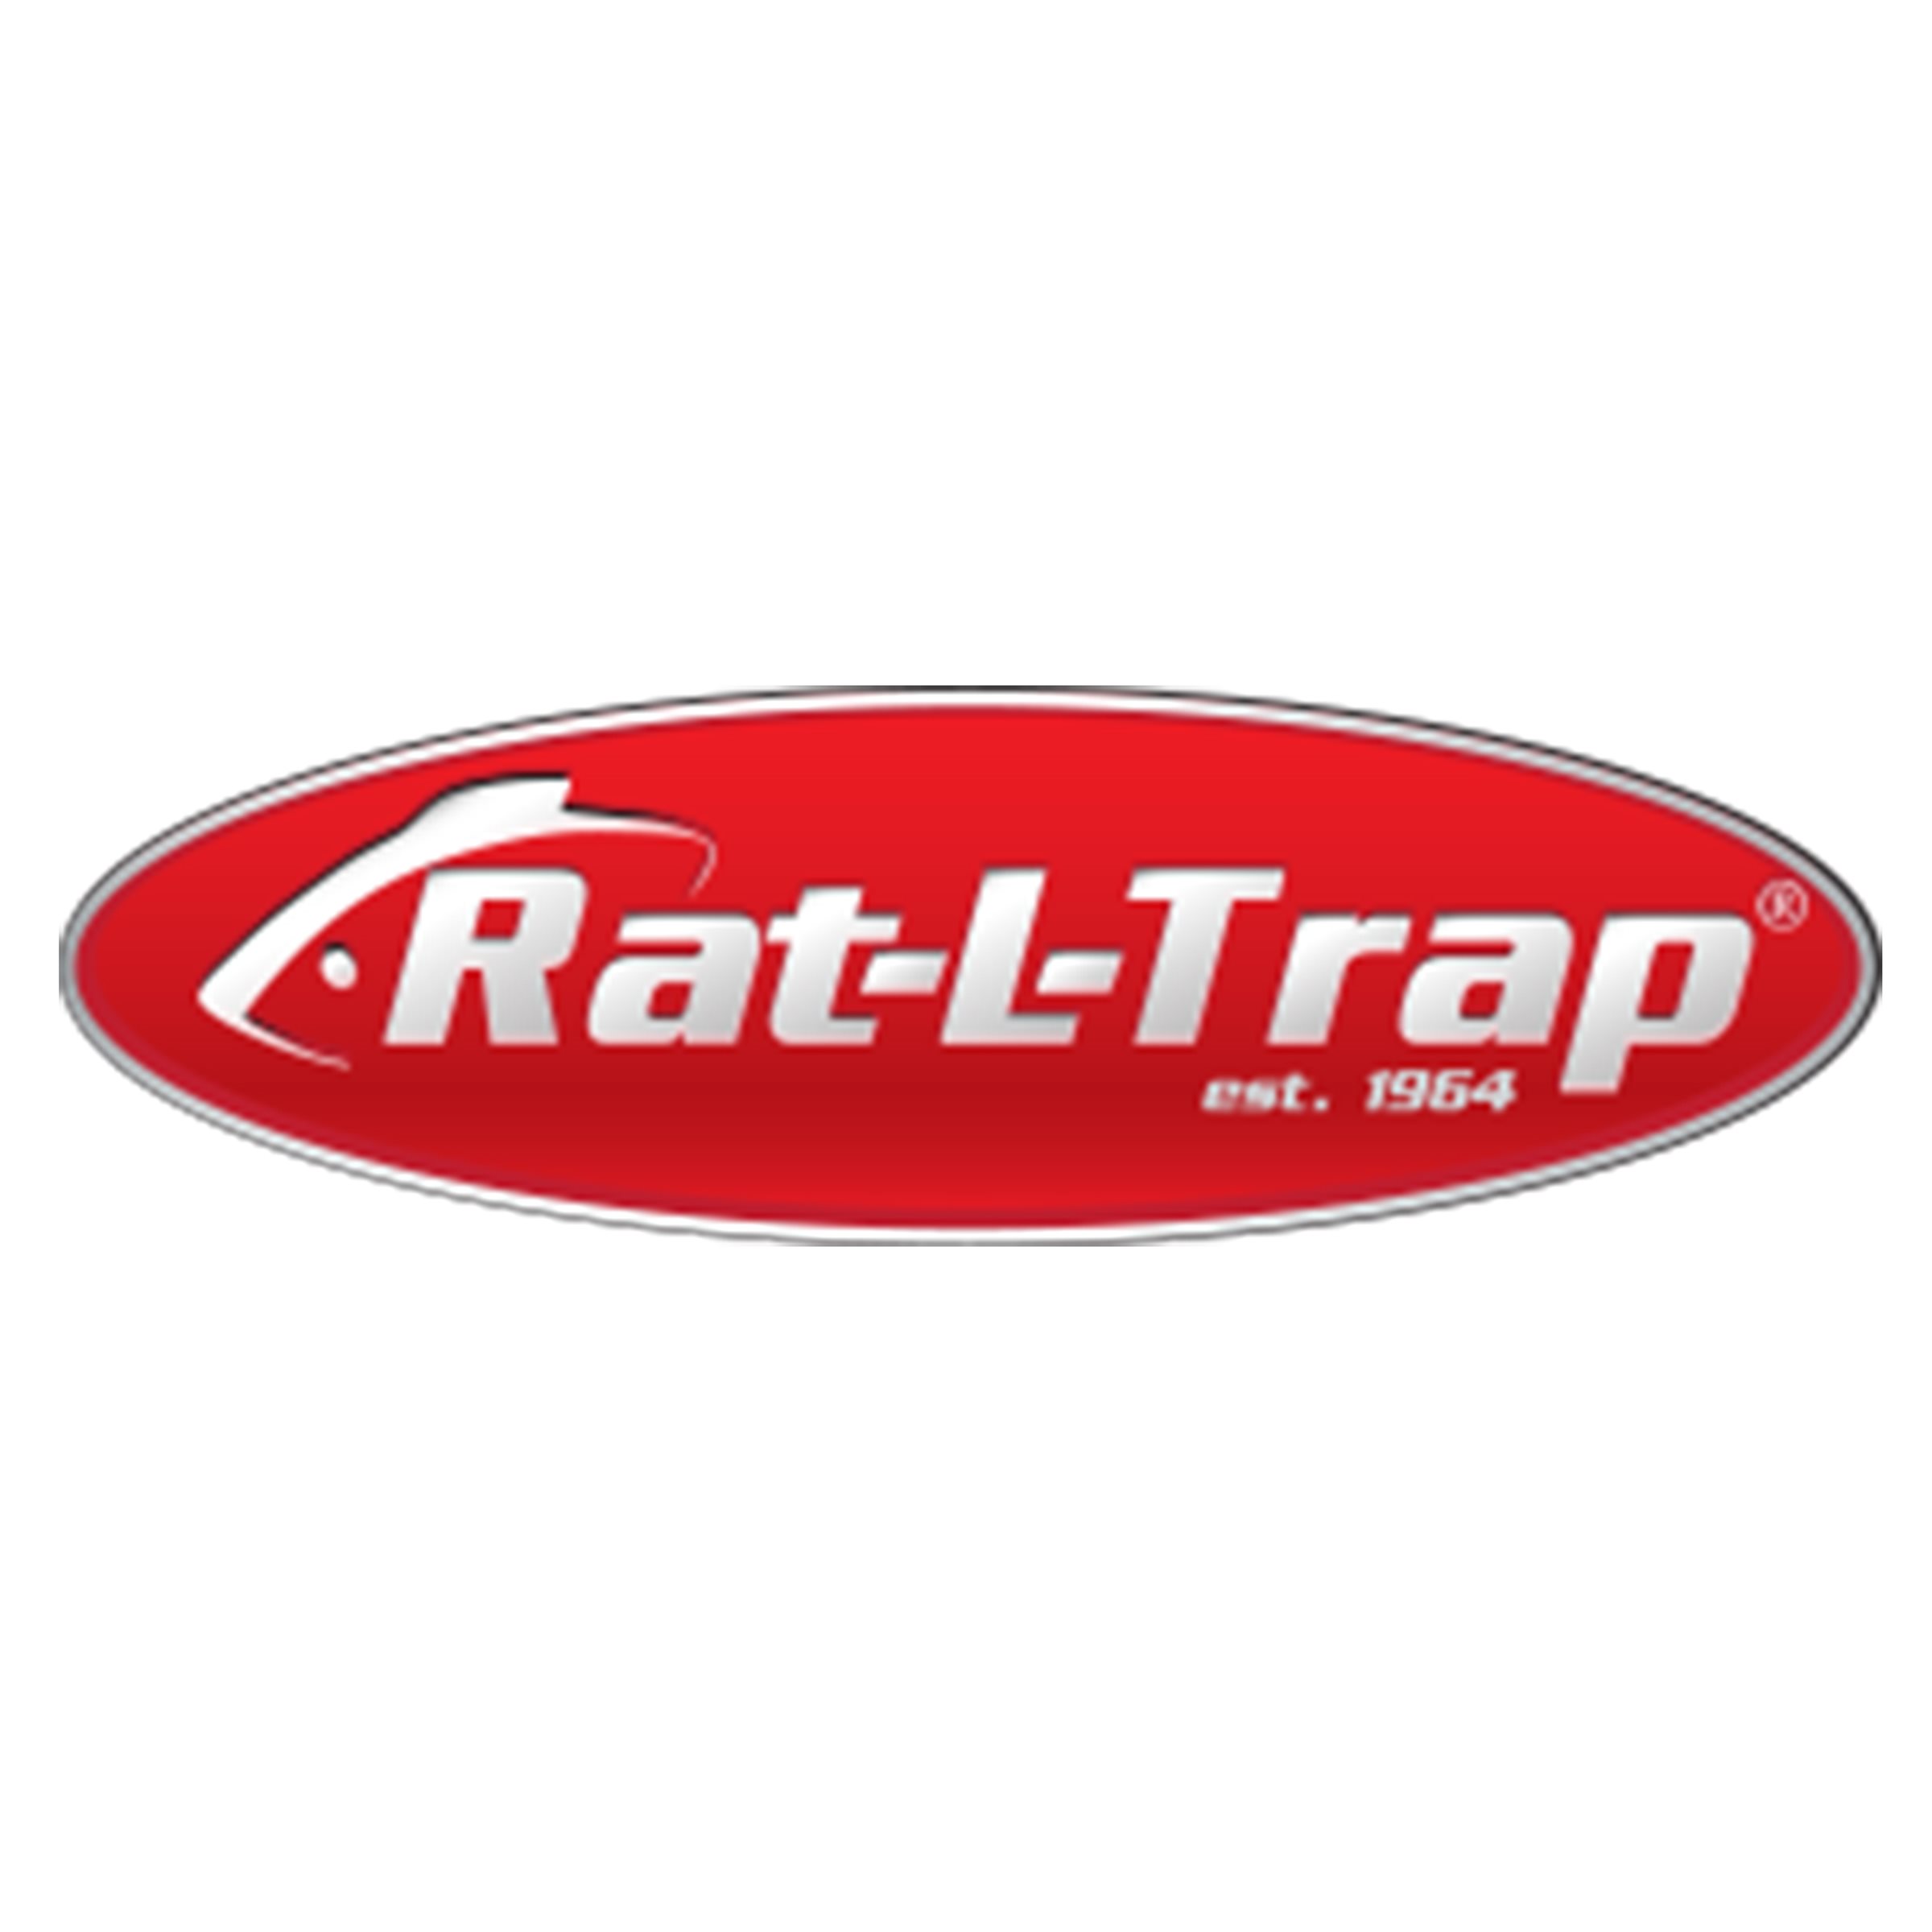 915-Rat-L-Trap